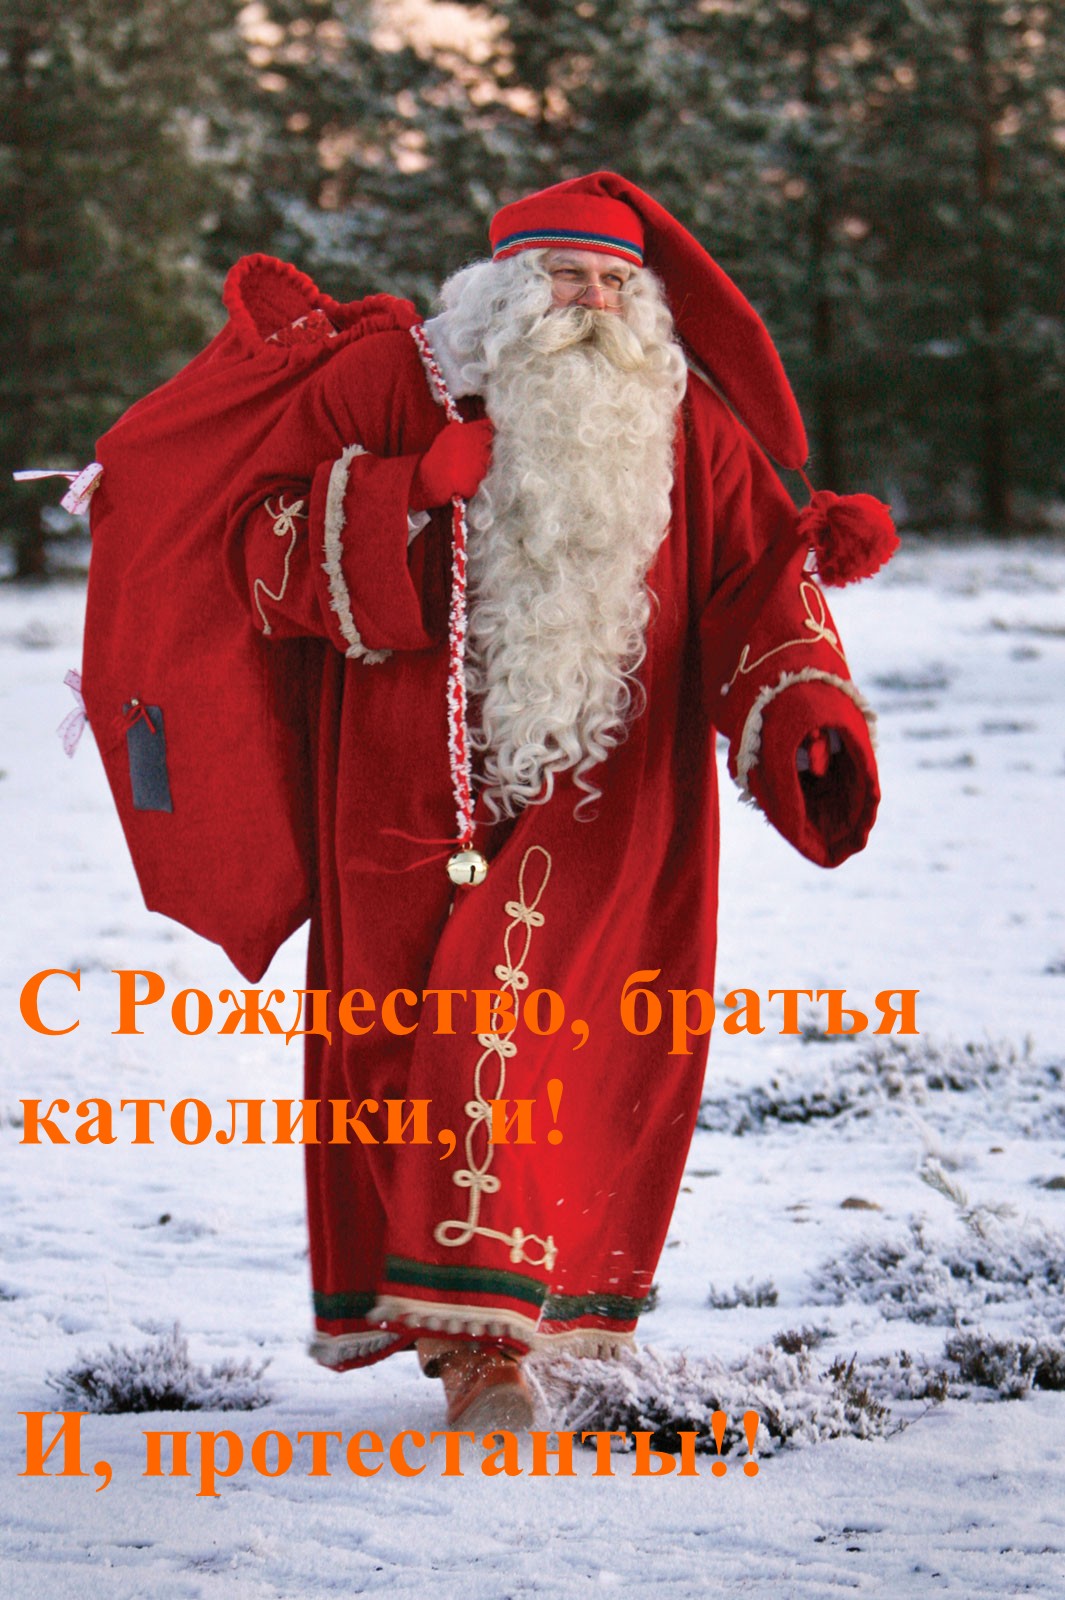 http://i64.fastpic.ru/big/2014/1224/39/edc2a52d68d33960c1d1f2199d9ff939.jpg